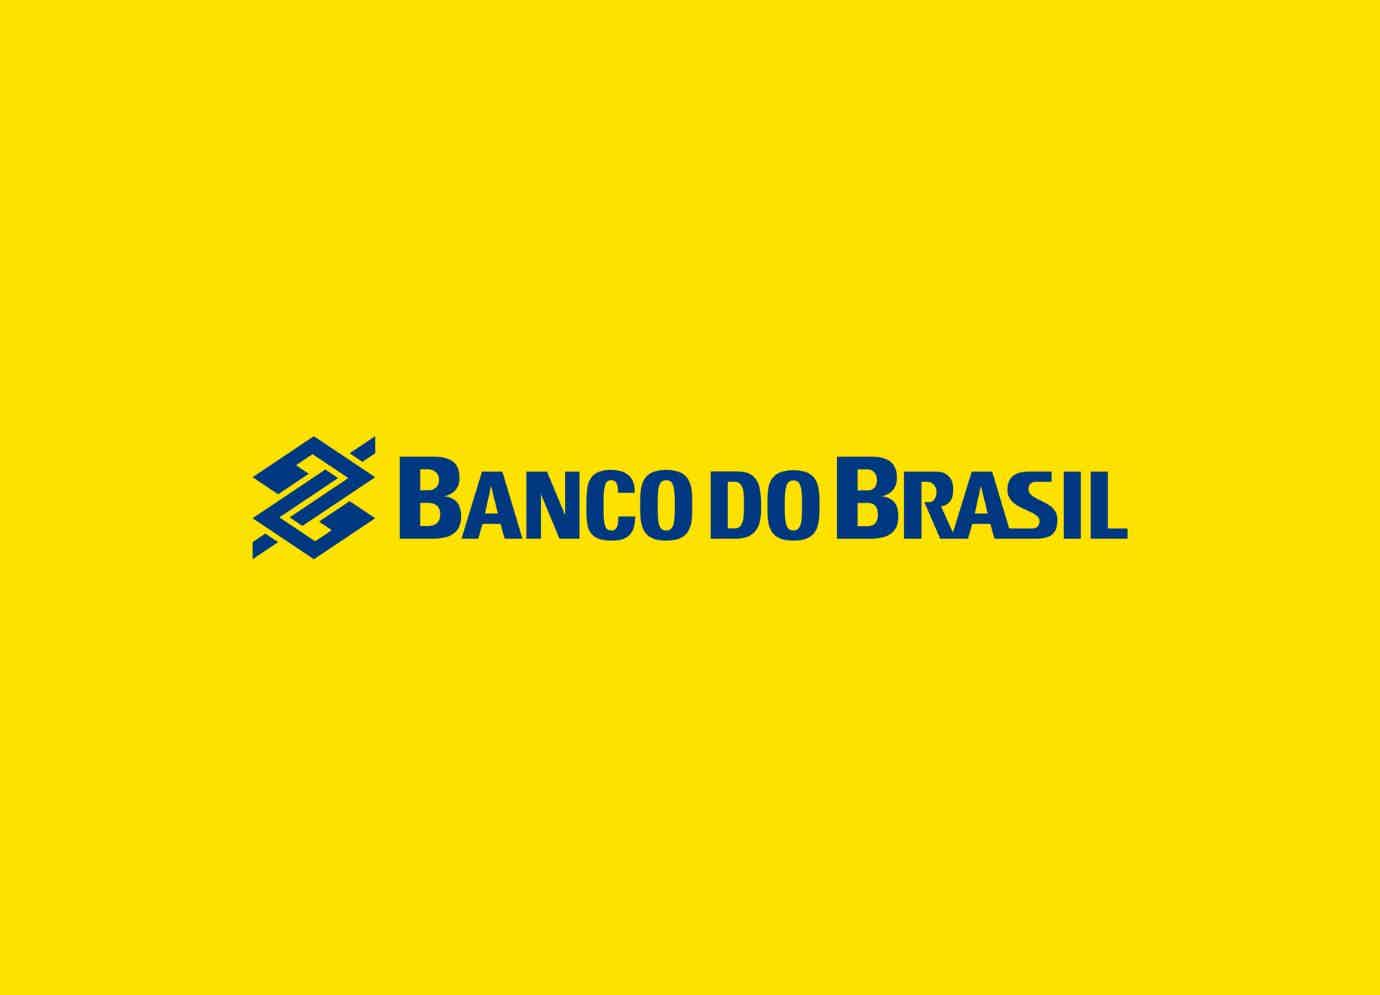 Logotipo do Banco do Brasil em amarelo e azul